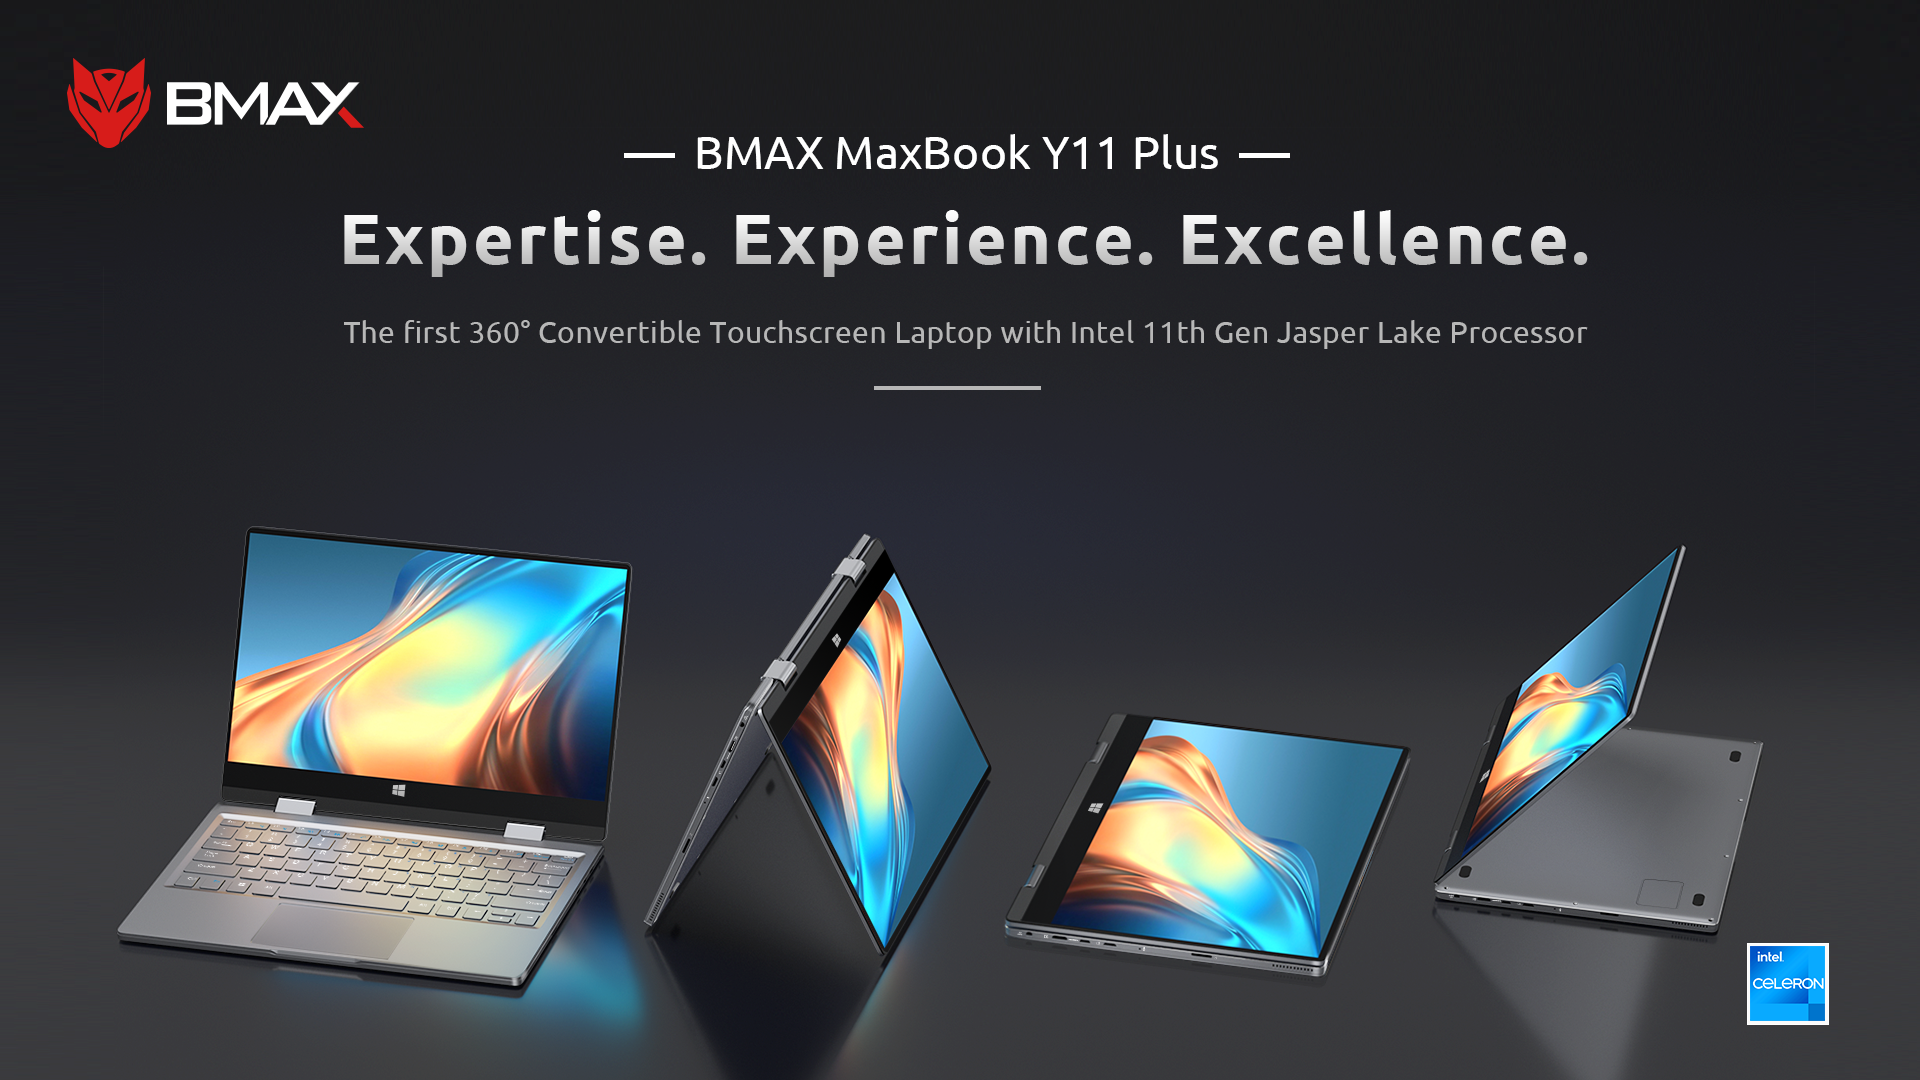 MaxBook Y11 Plus - Buy MaxBook Y11 Plus Product on BMAX